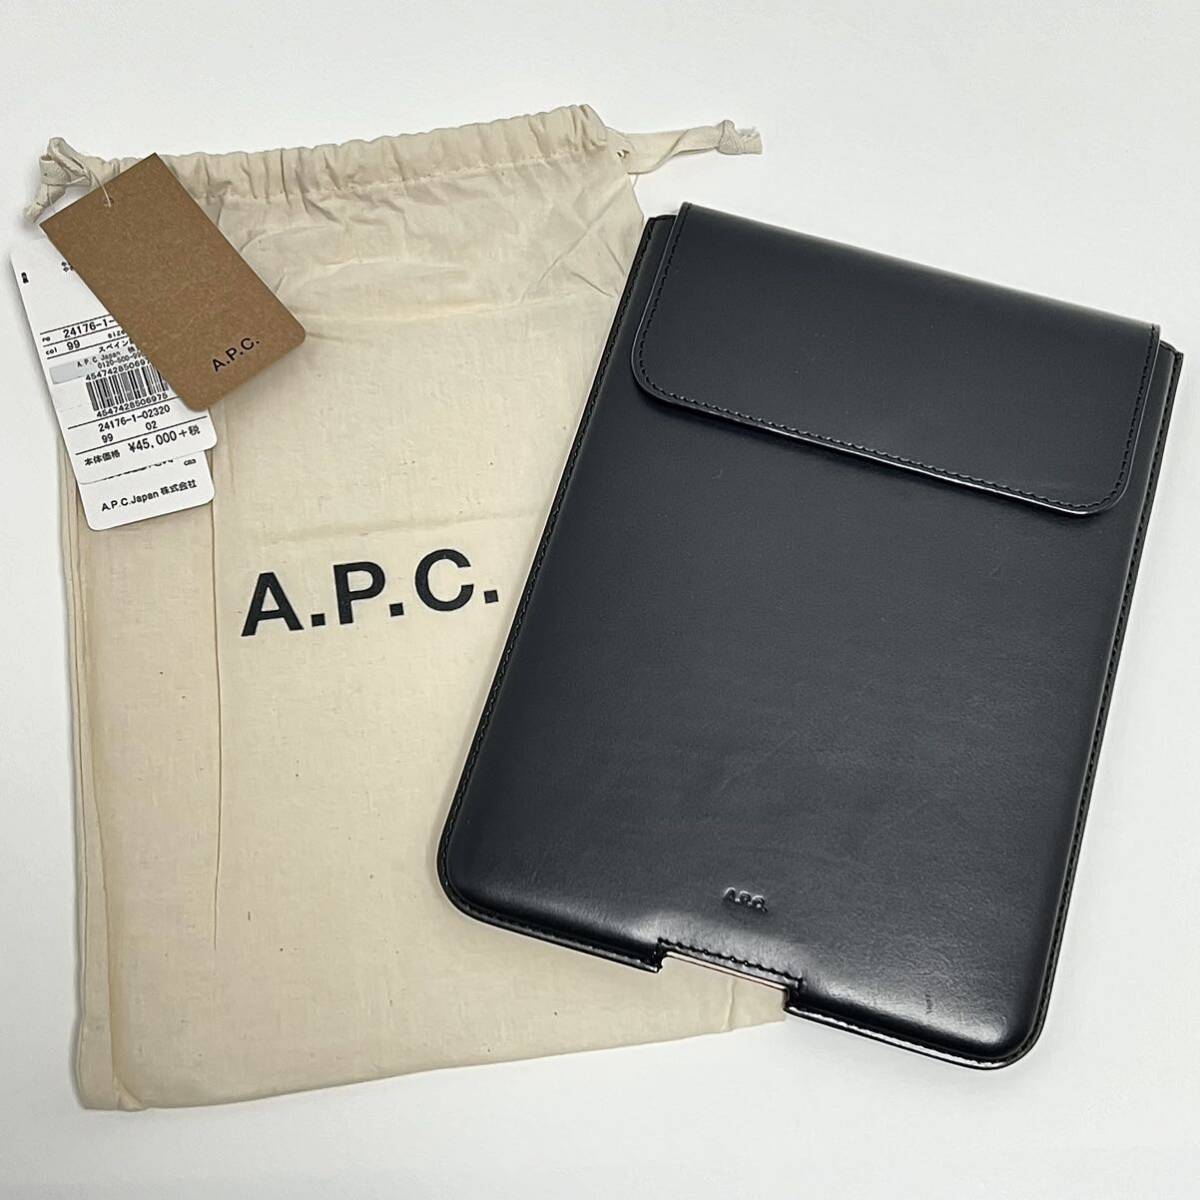 新品 A.P.C. 定価49500円 レザー ロゴ タブレット 収納 ケース ホルダー iPad mini アイパッド ミニ LAVIE レノボ タブ Lenovo ブランド_画像1